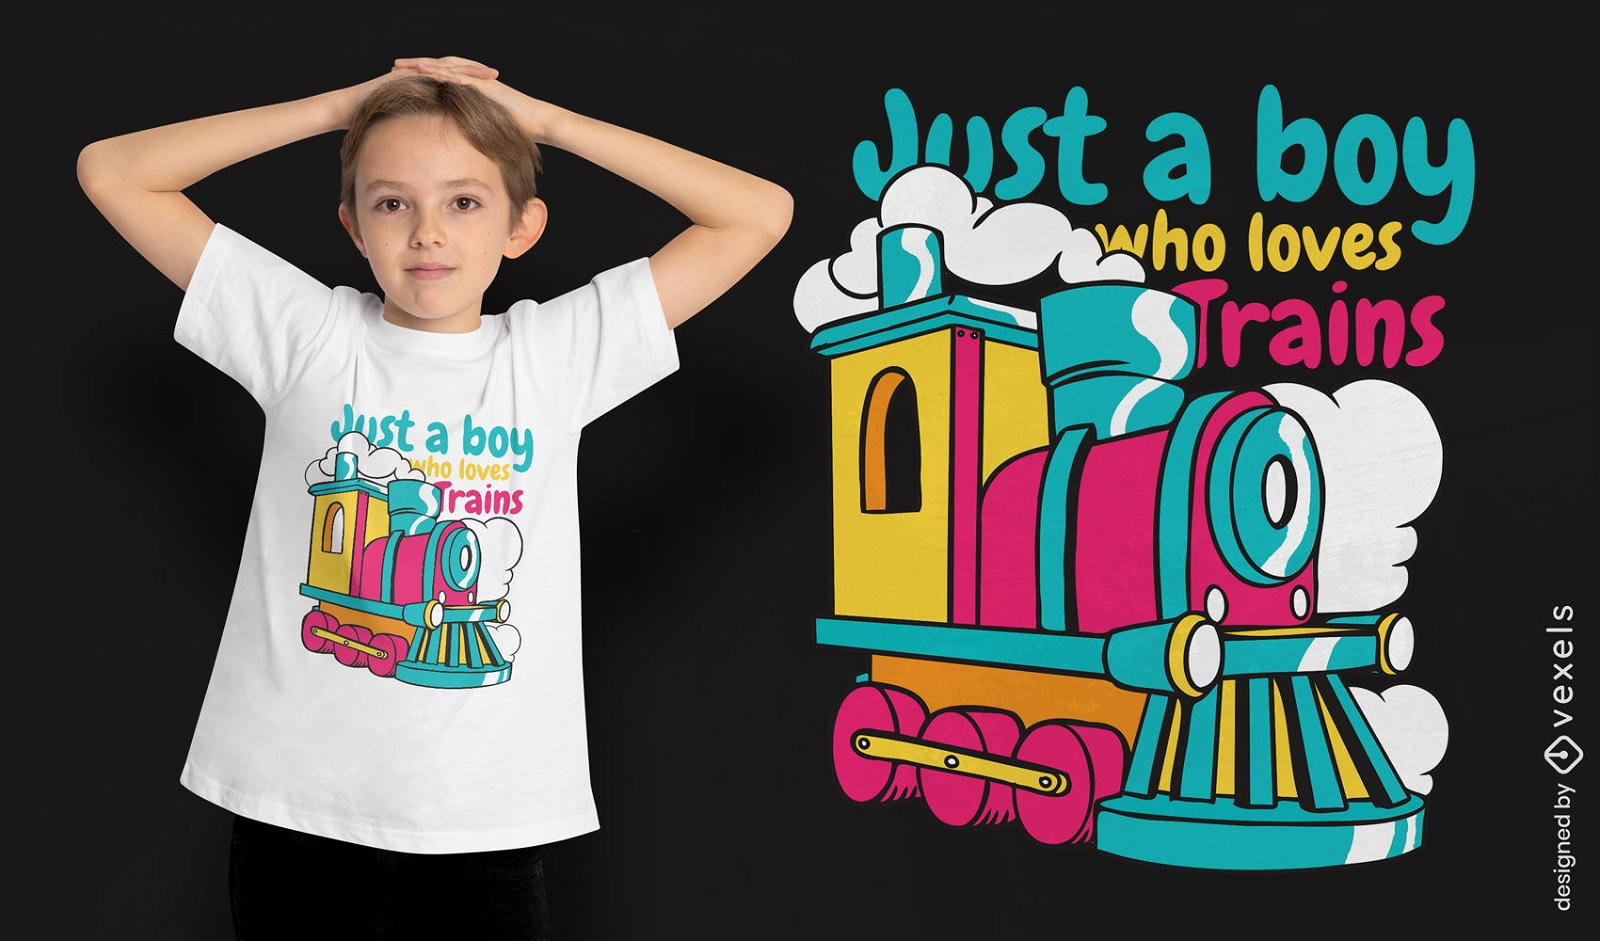 El chico ama el dise?o de la camiseta de los trenes.